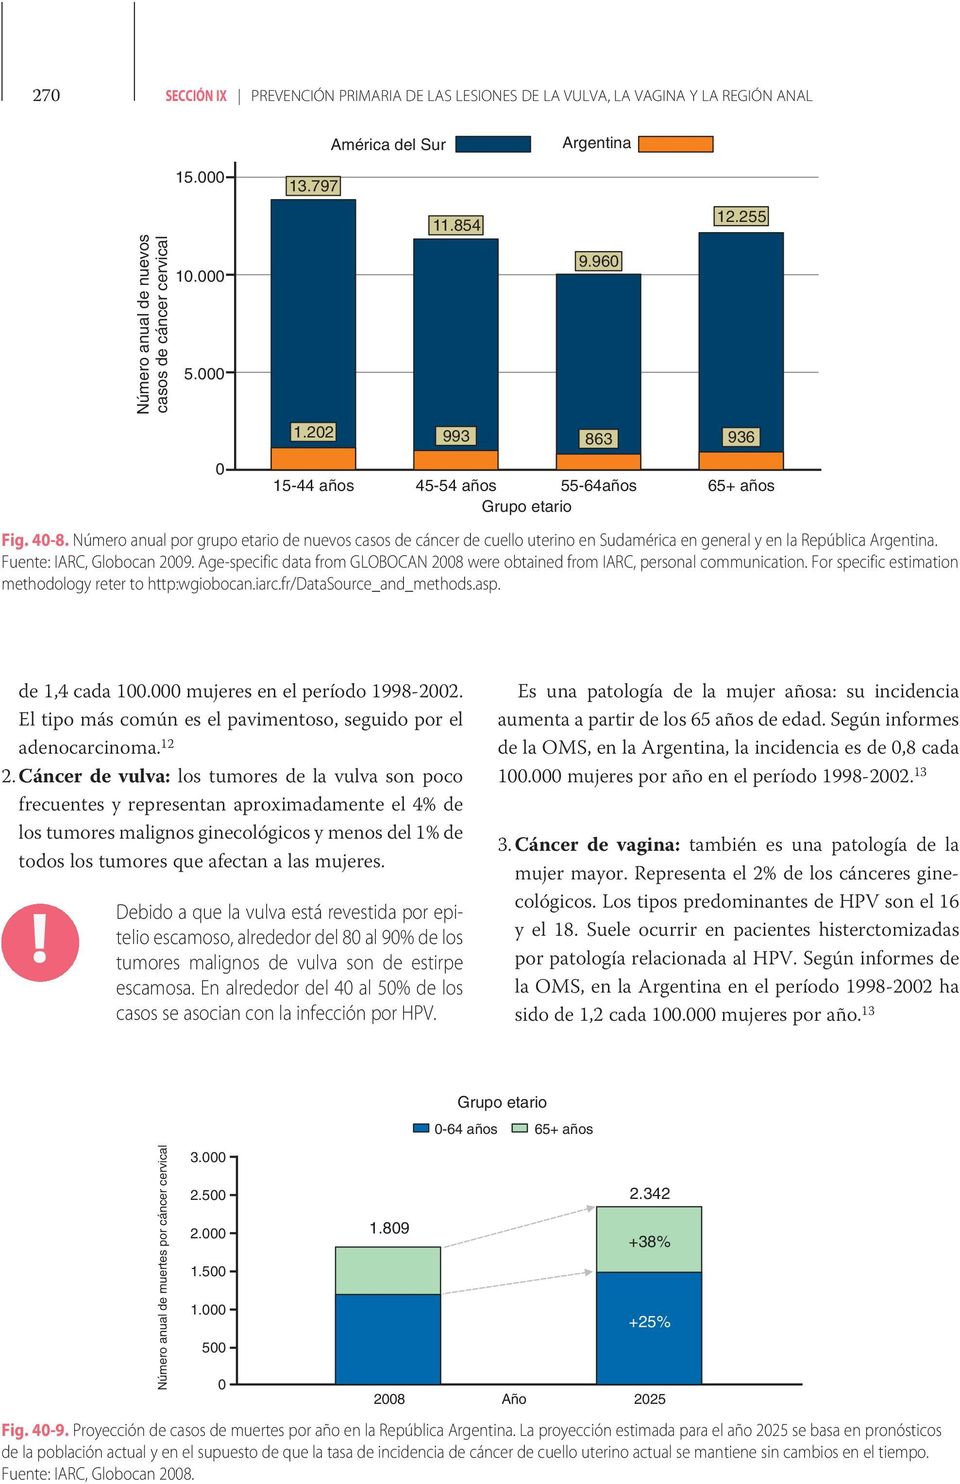 Número anual por grupo etario de nuevos casos de cáncer de cuello uterino en Sudamérica en general y en la República Argentina. Fuente: IARC, Globocan 2009.